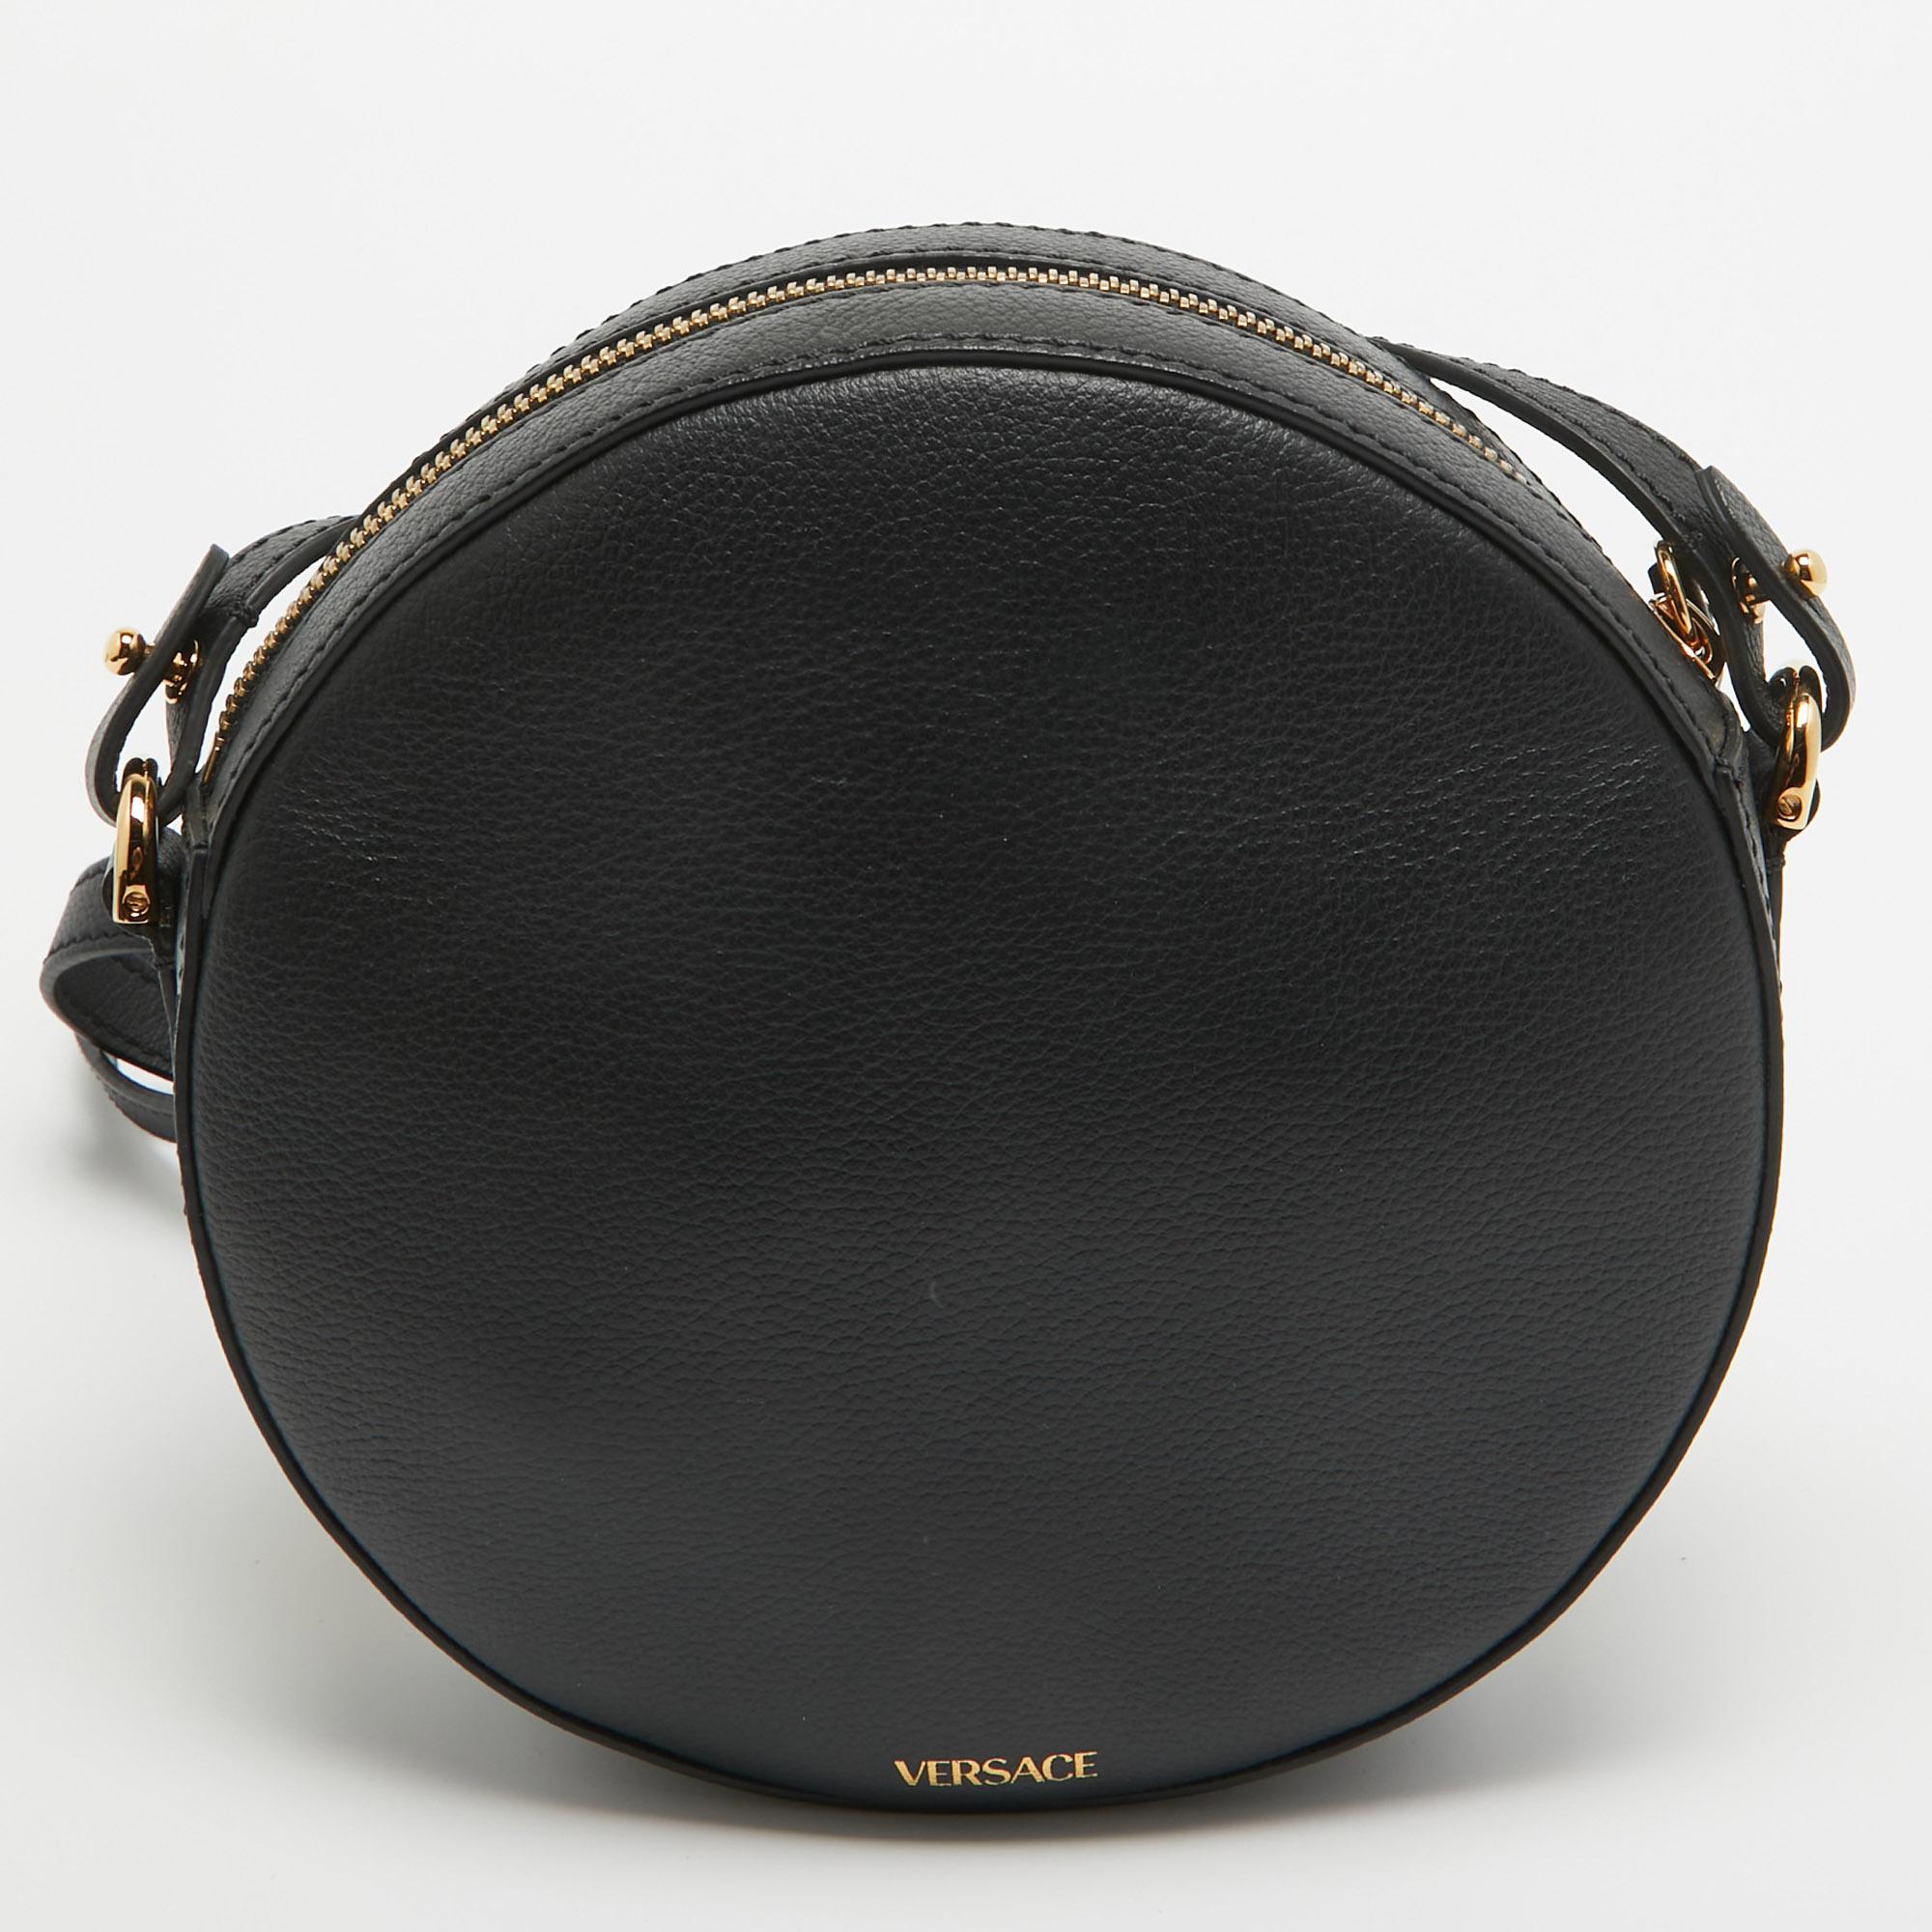 Confectionné en cuir noir luxueux, le sac à bandoulière La Medusa de Versace respire l'opulence et le style. Son design rond et élégant est orné de l'emblème emblématique de la Méduse, tandis que la sangle en chaîne ajoute une touche de glamour.